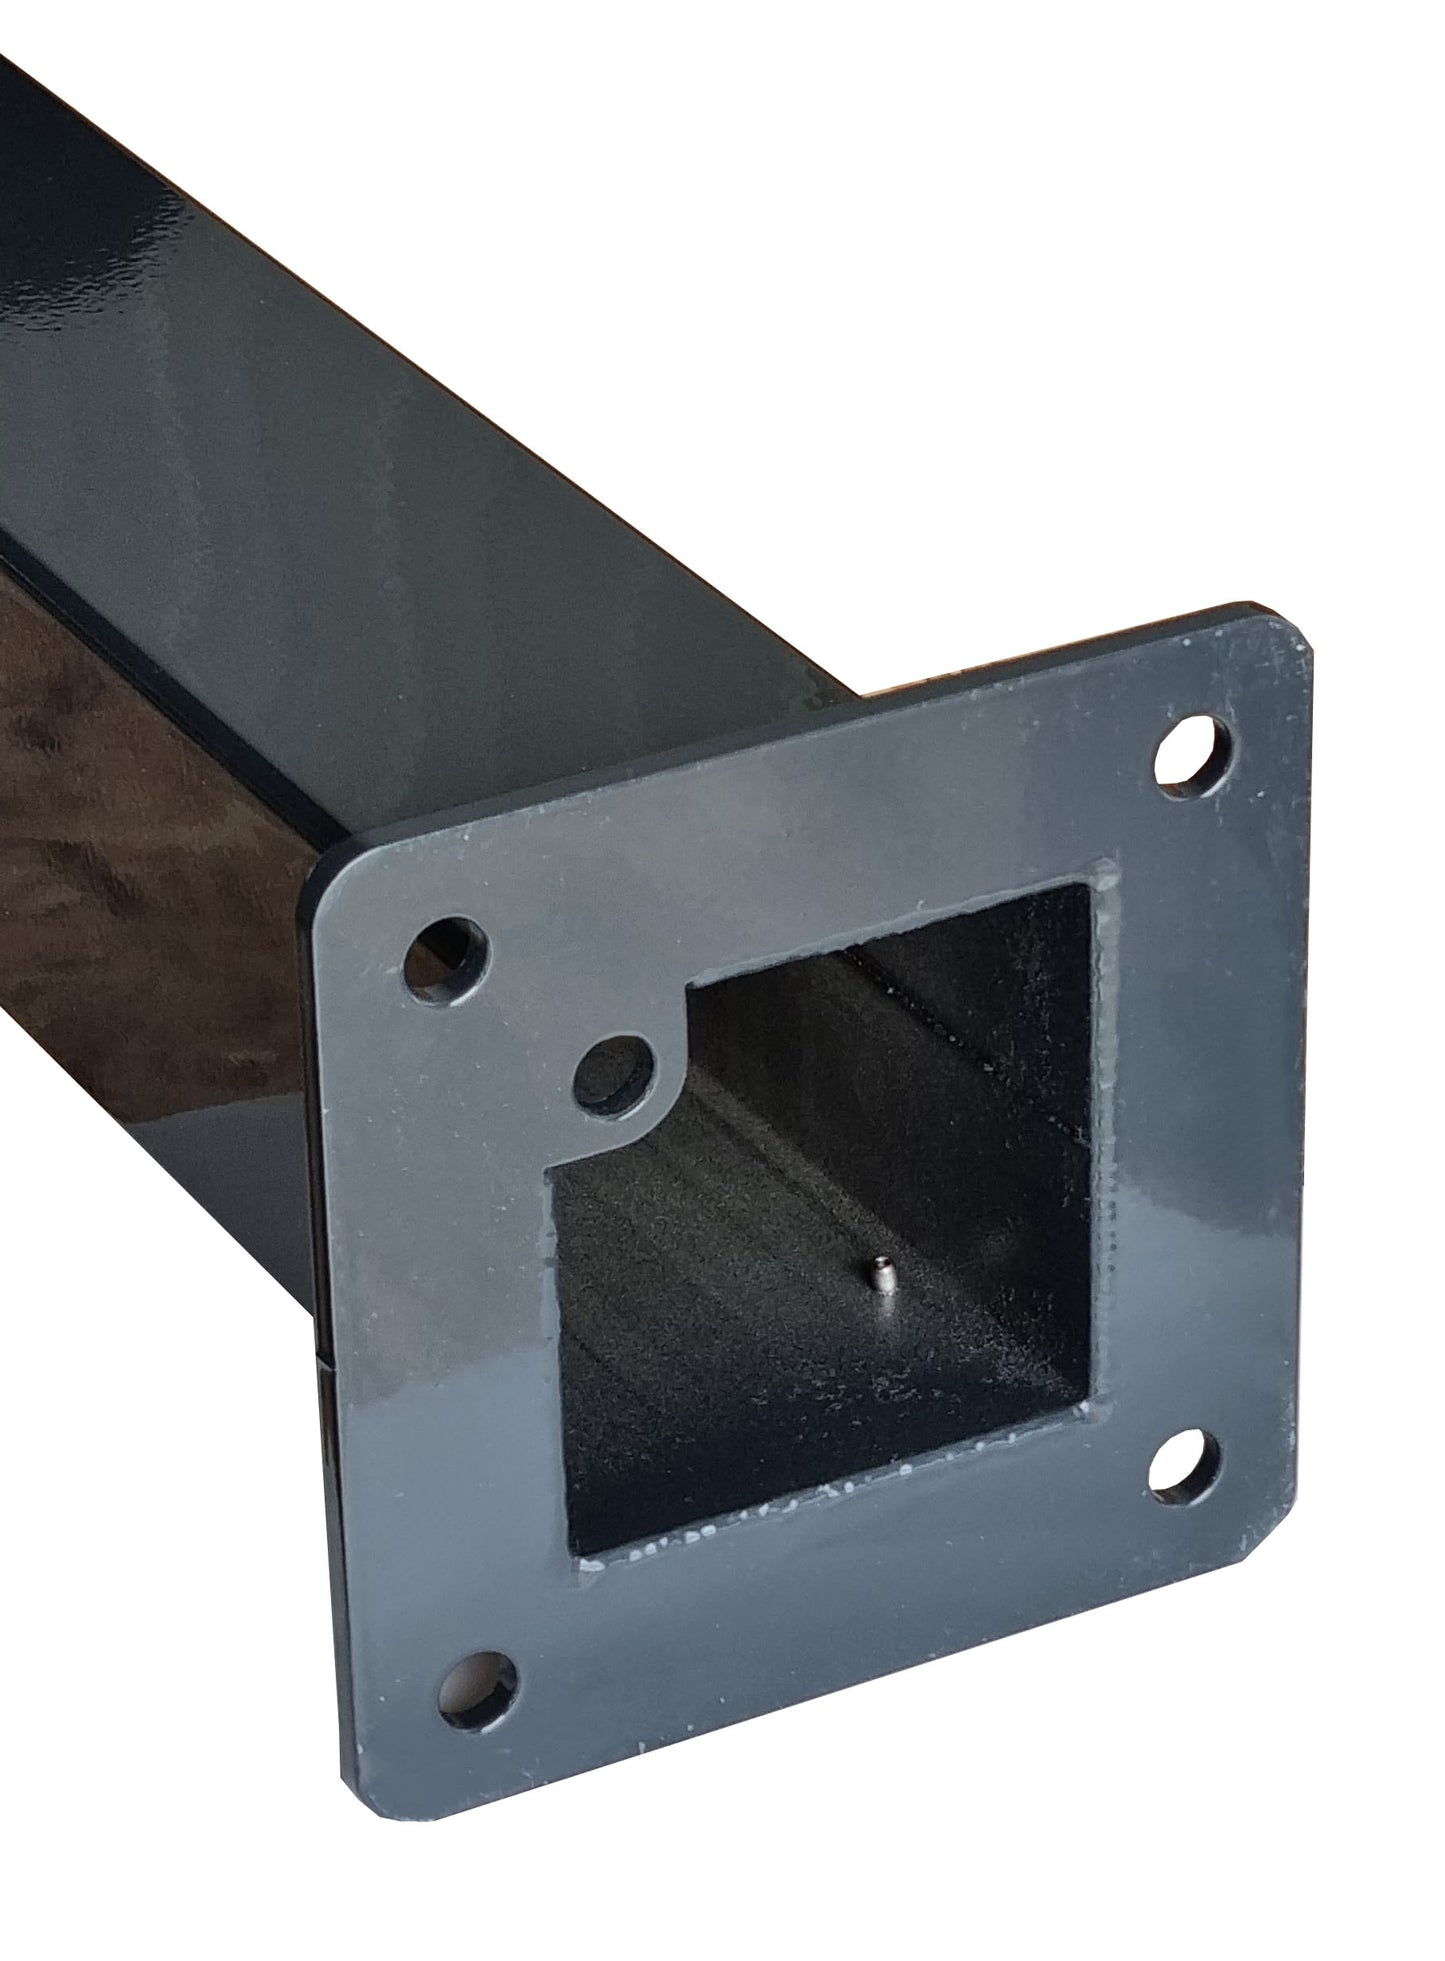 Laadpaal geschikt voor ABL EM4 Wallbox | met dak | standaard | voetstuk